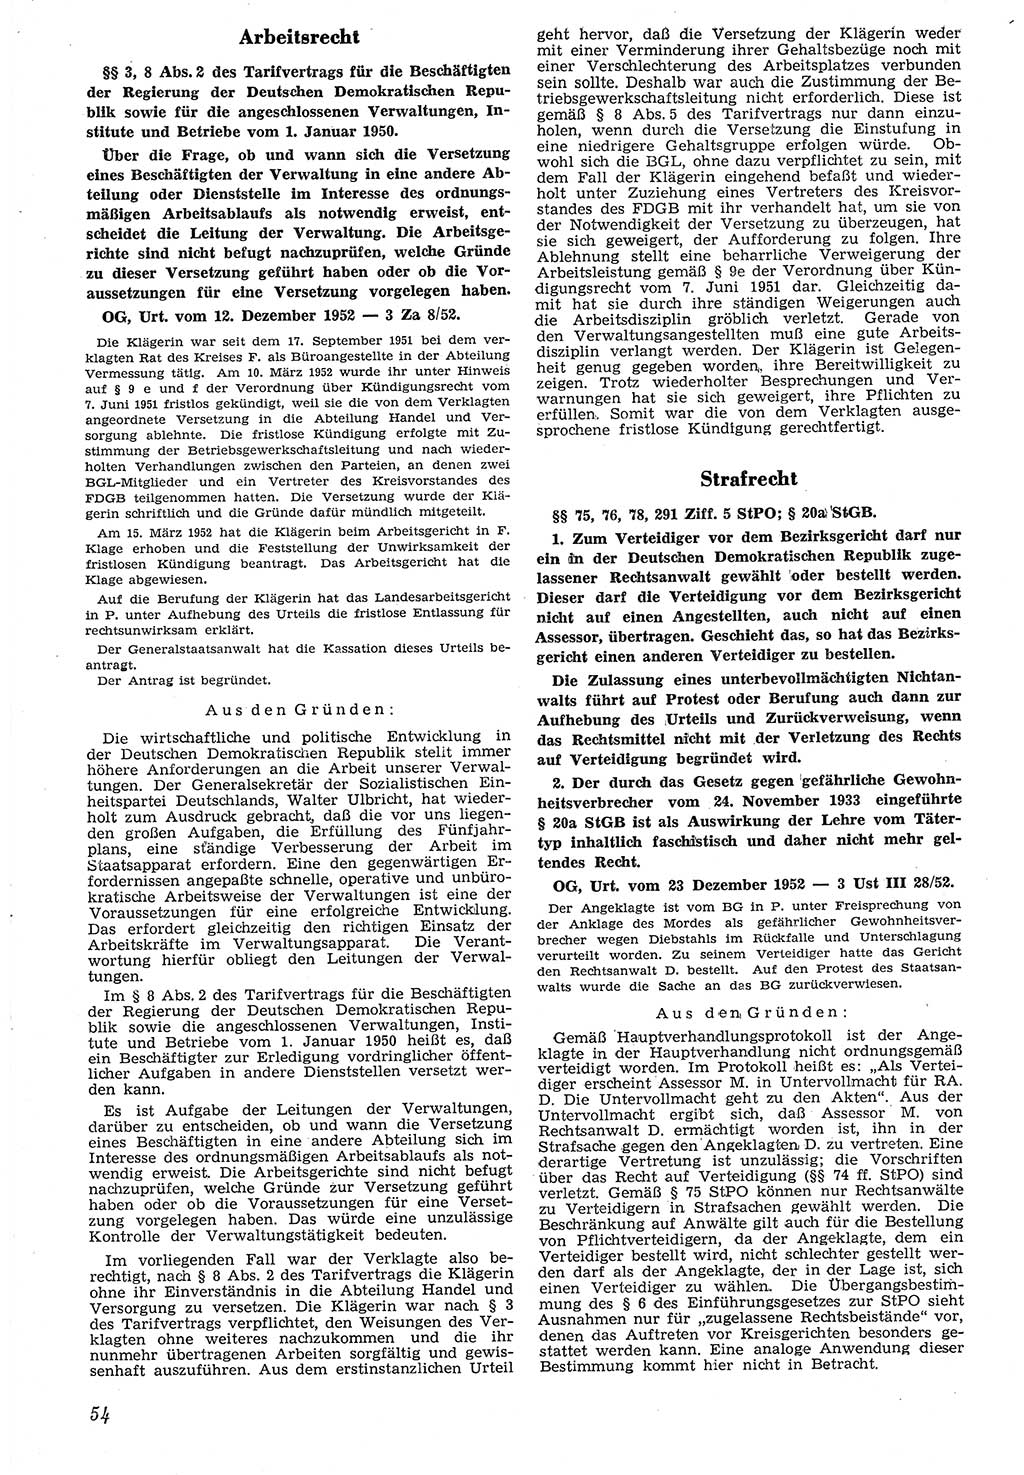 Neue Justiz (NJ), Zeitschrift für Recht und Rechtswissenschaft [Deutsche Demokratische Republik (DDR)], 7. Jahrgang 1953, Seite 54 (NJ DDR 1953, S. 54)